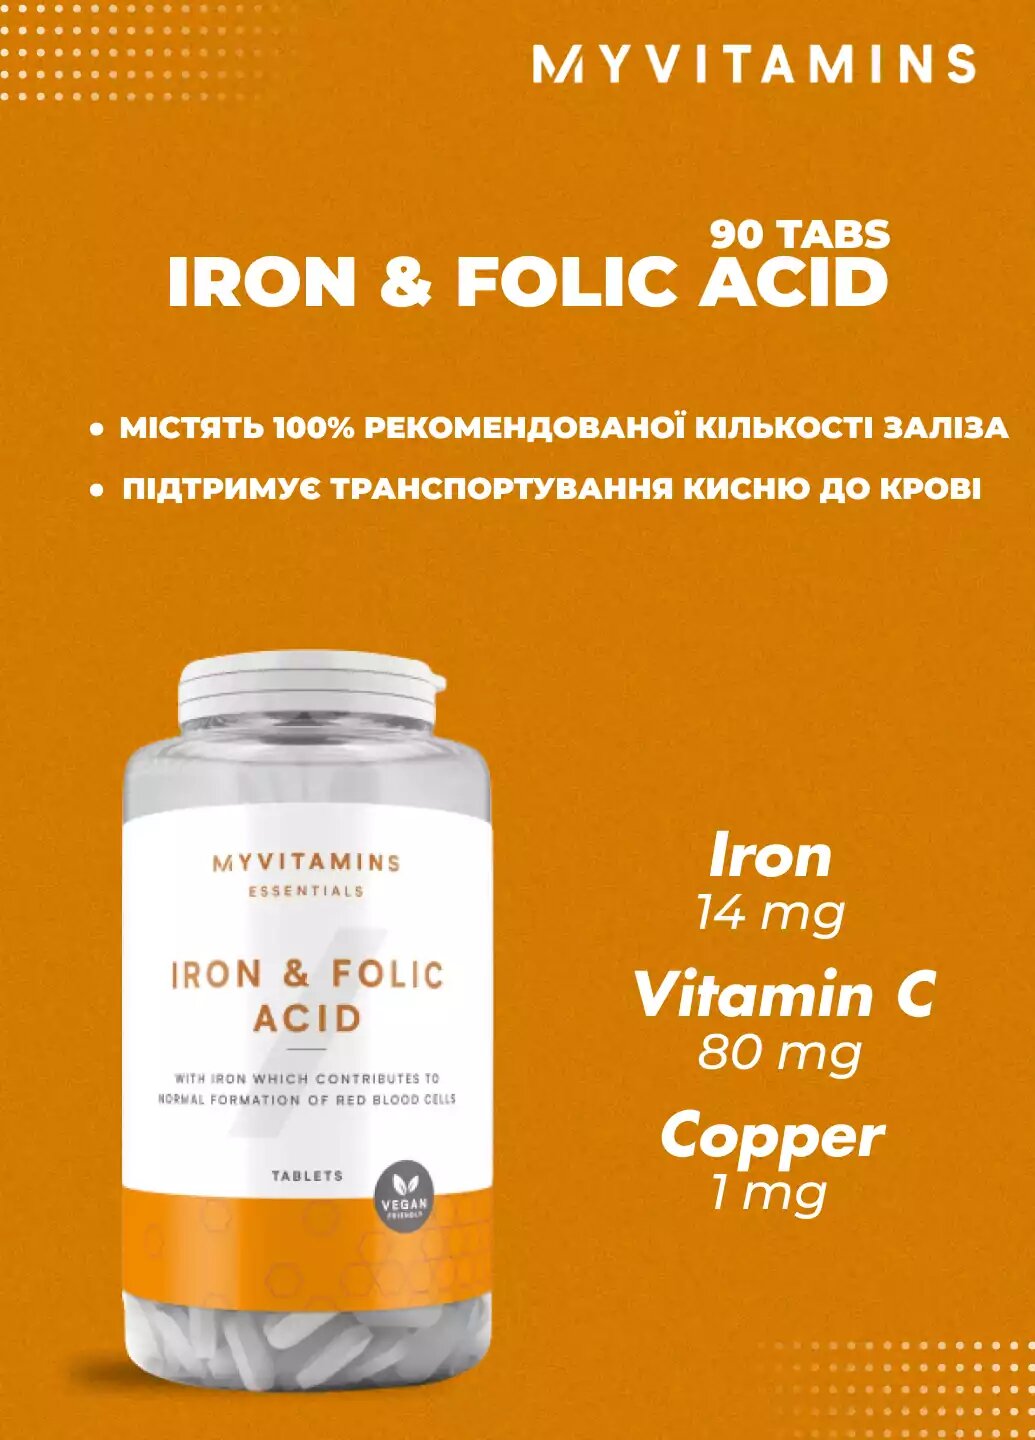 Myvitamins Iron & Folic Acid Capsules